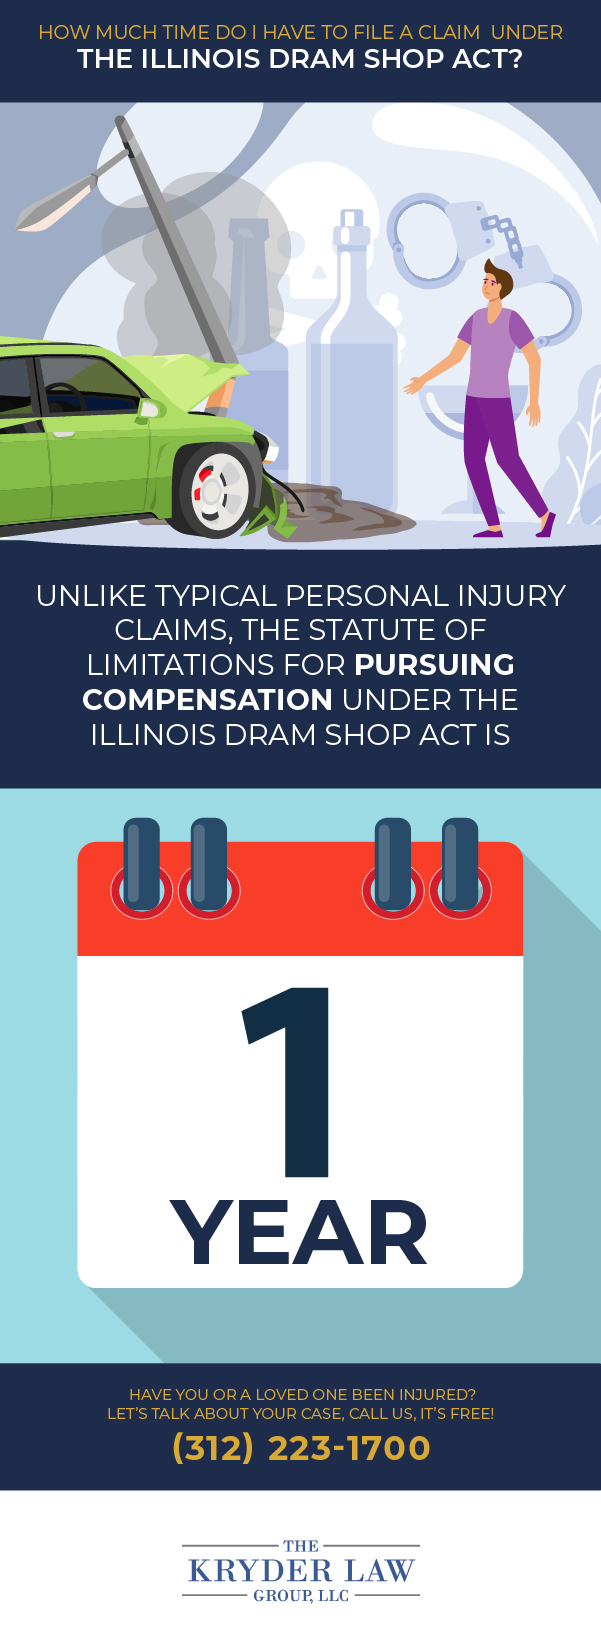 ¿Cuánto tiempo tengo para presentar un reclamo según la infografía de la Ley de Dram Shop de Illinois?